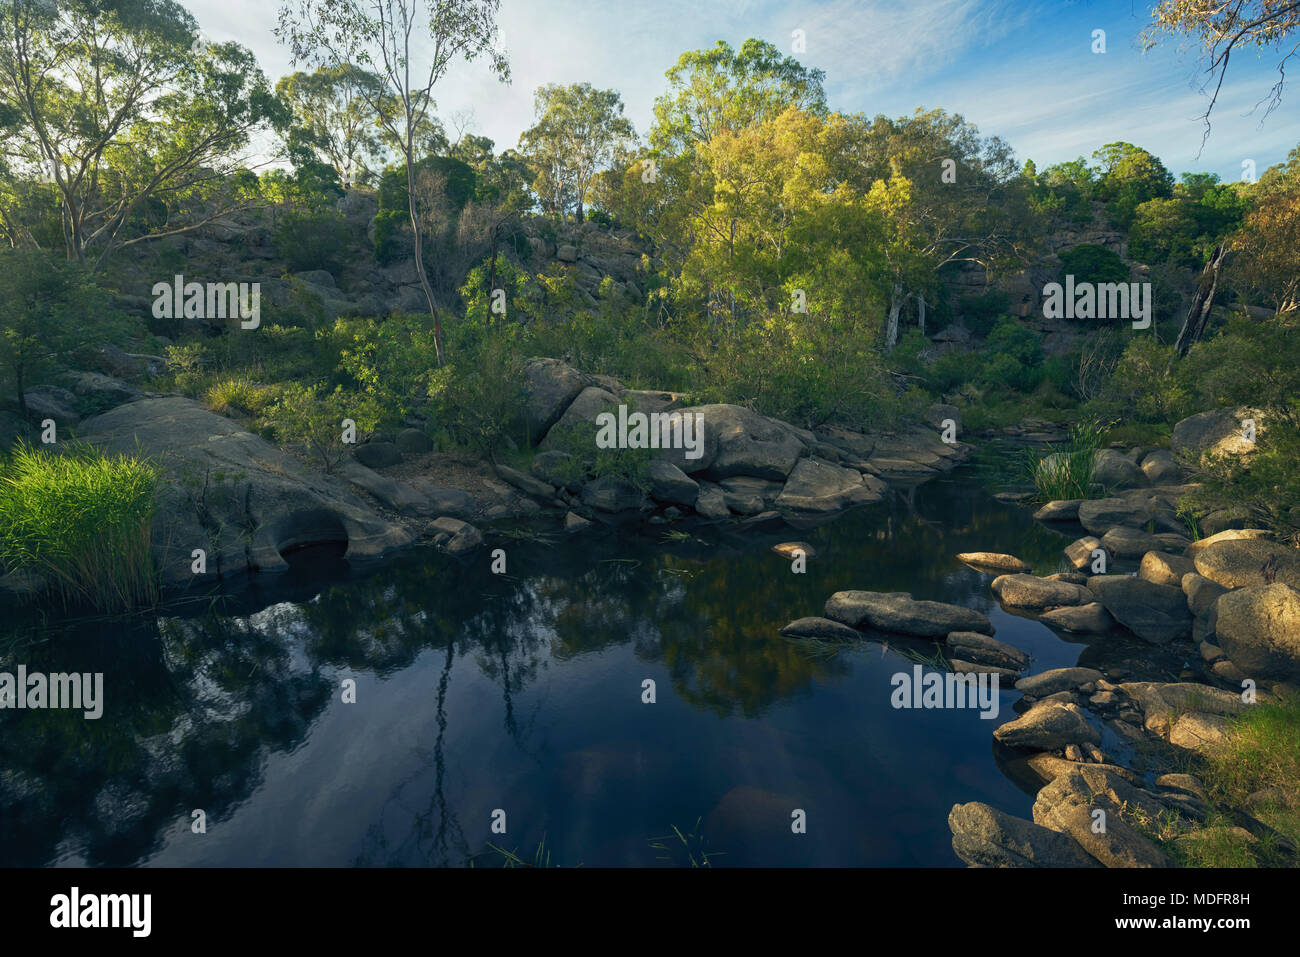 Treelined river, Melbourne, Victoria, Australia Stock Photo